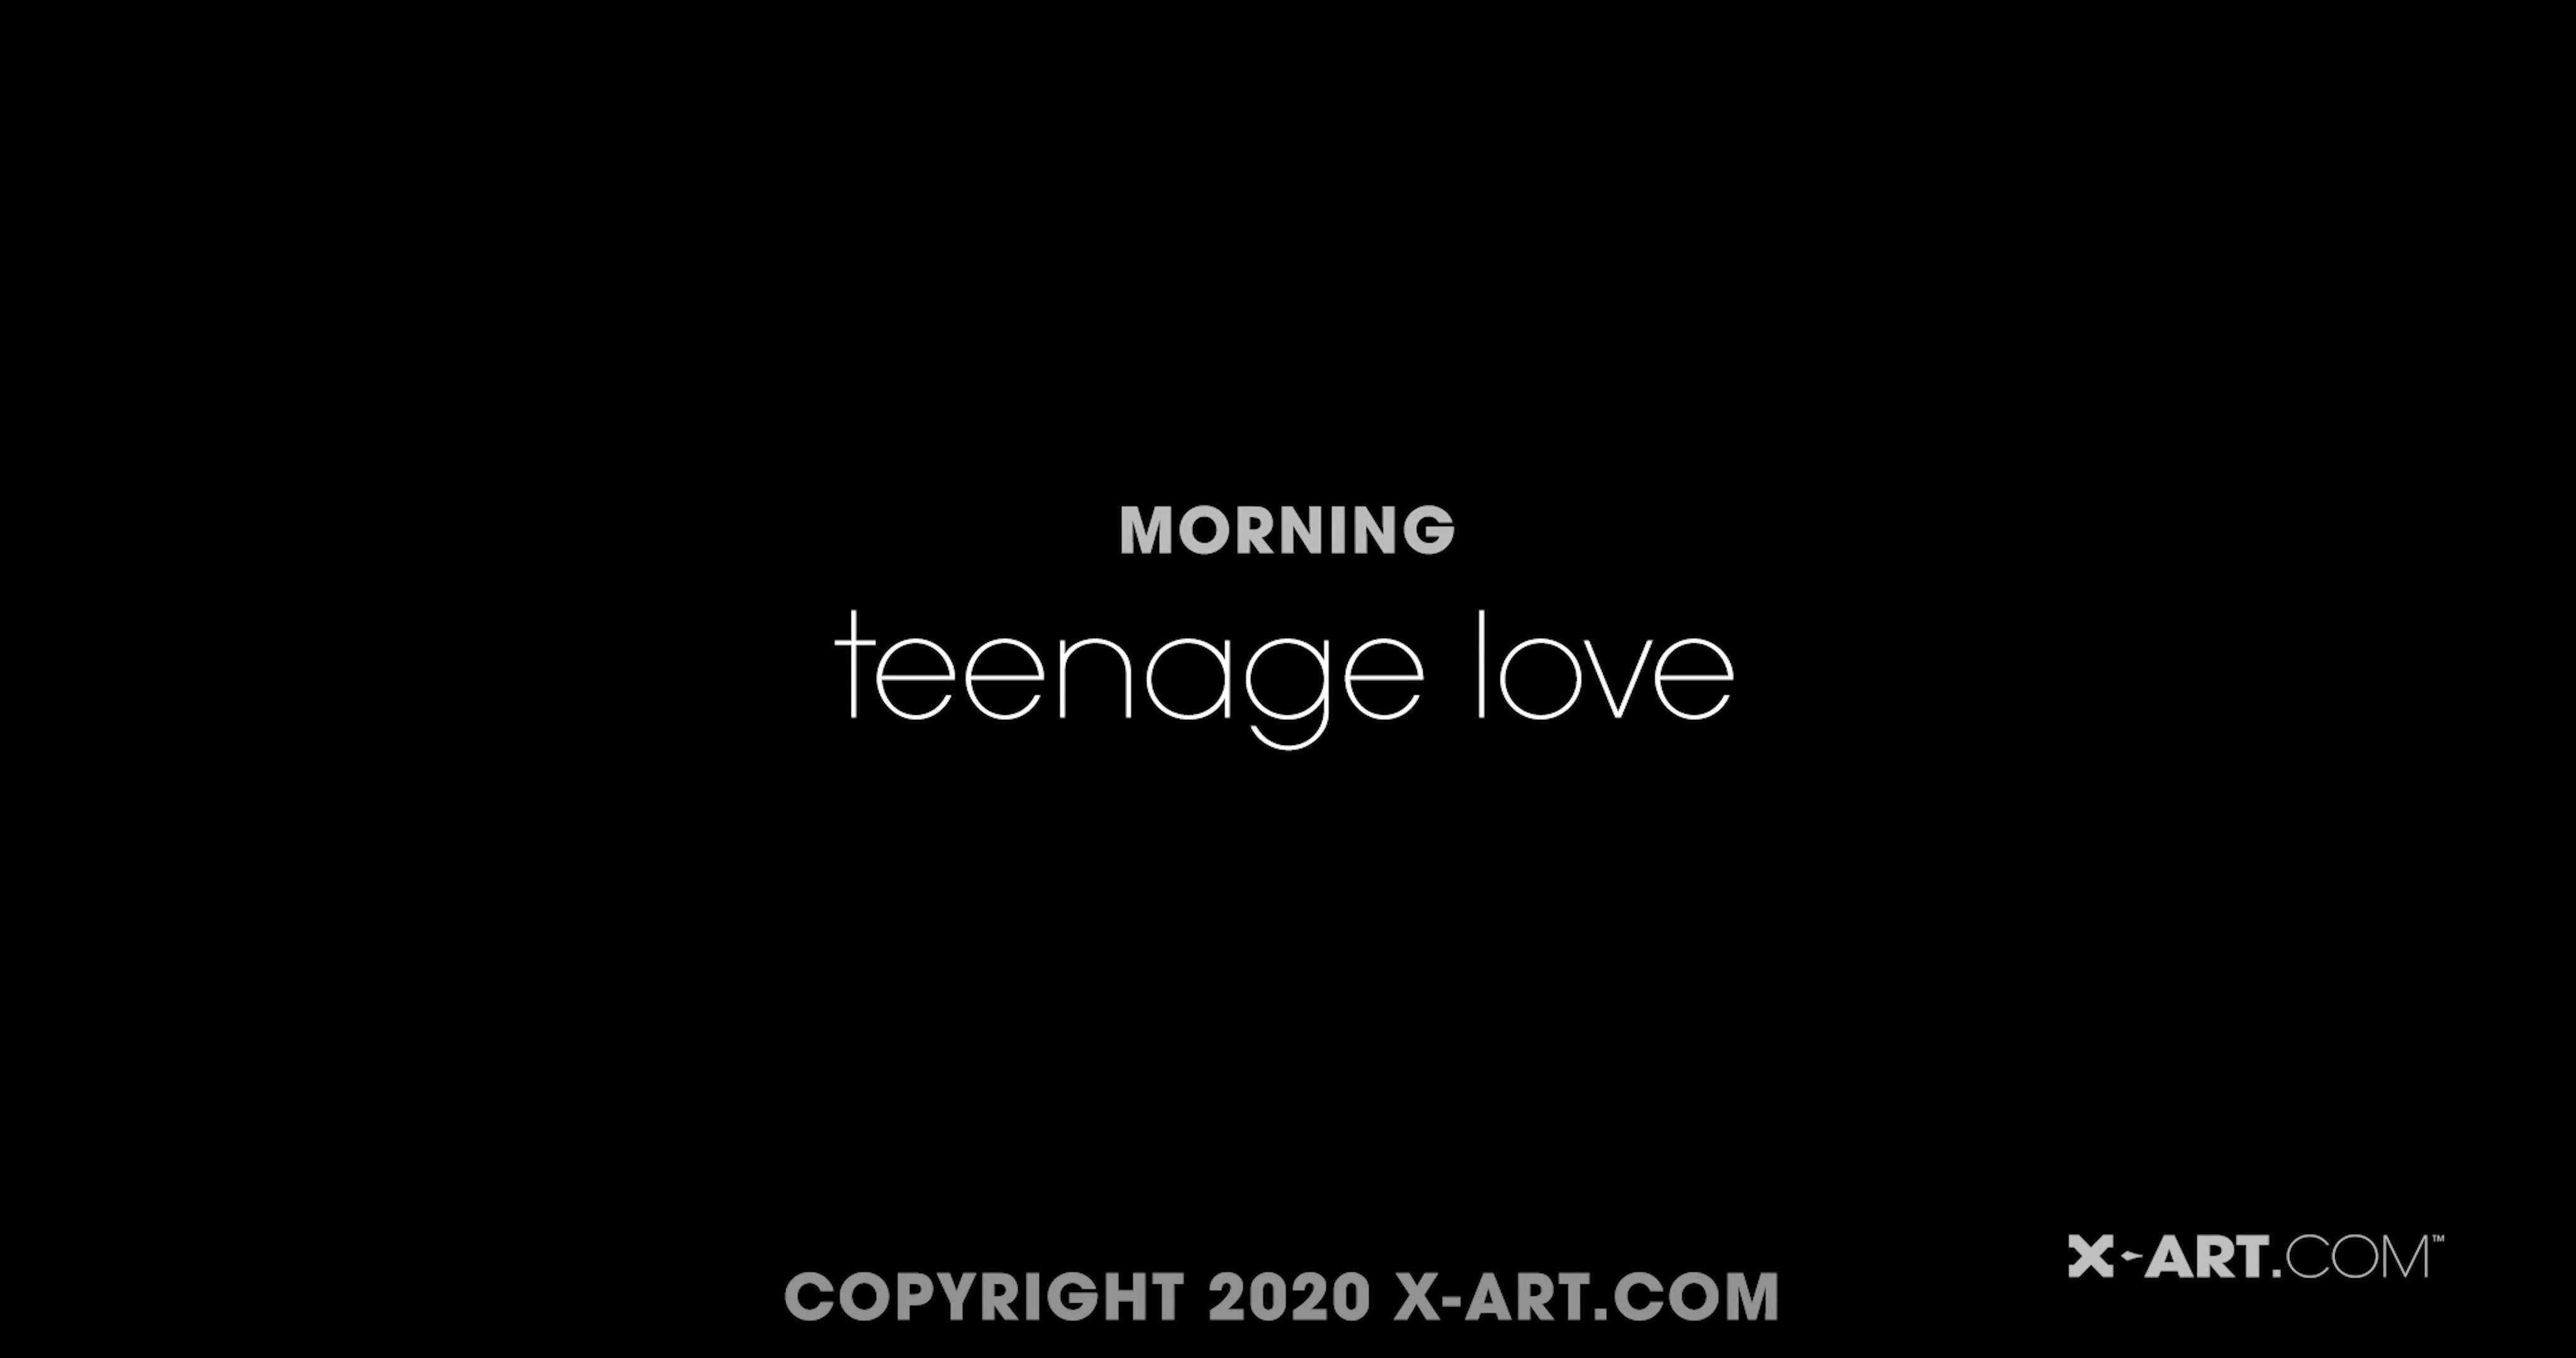 Eveline Morning Teenage Love In 4K